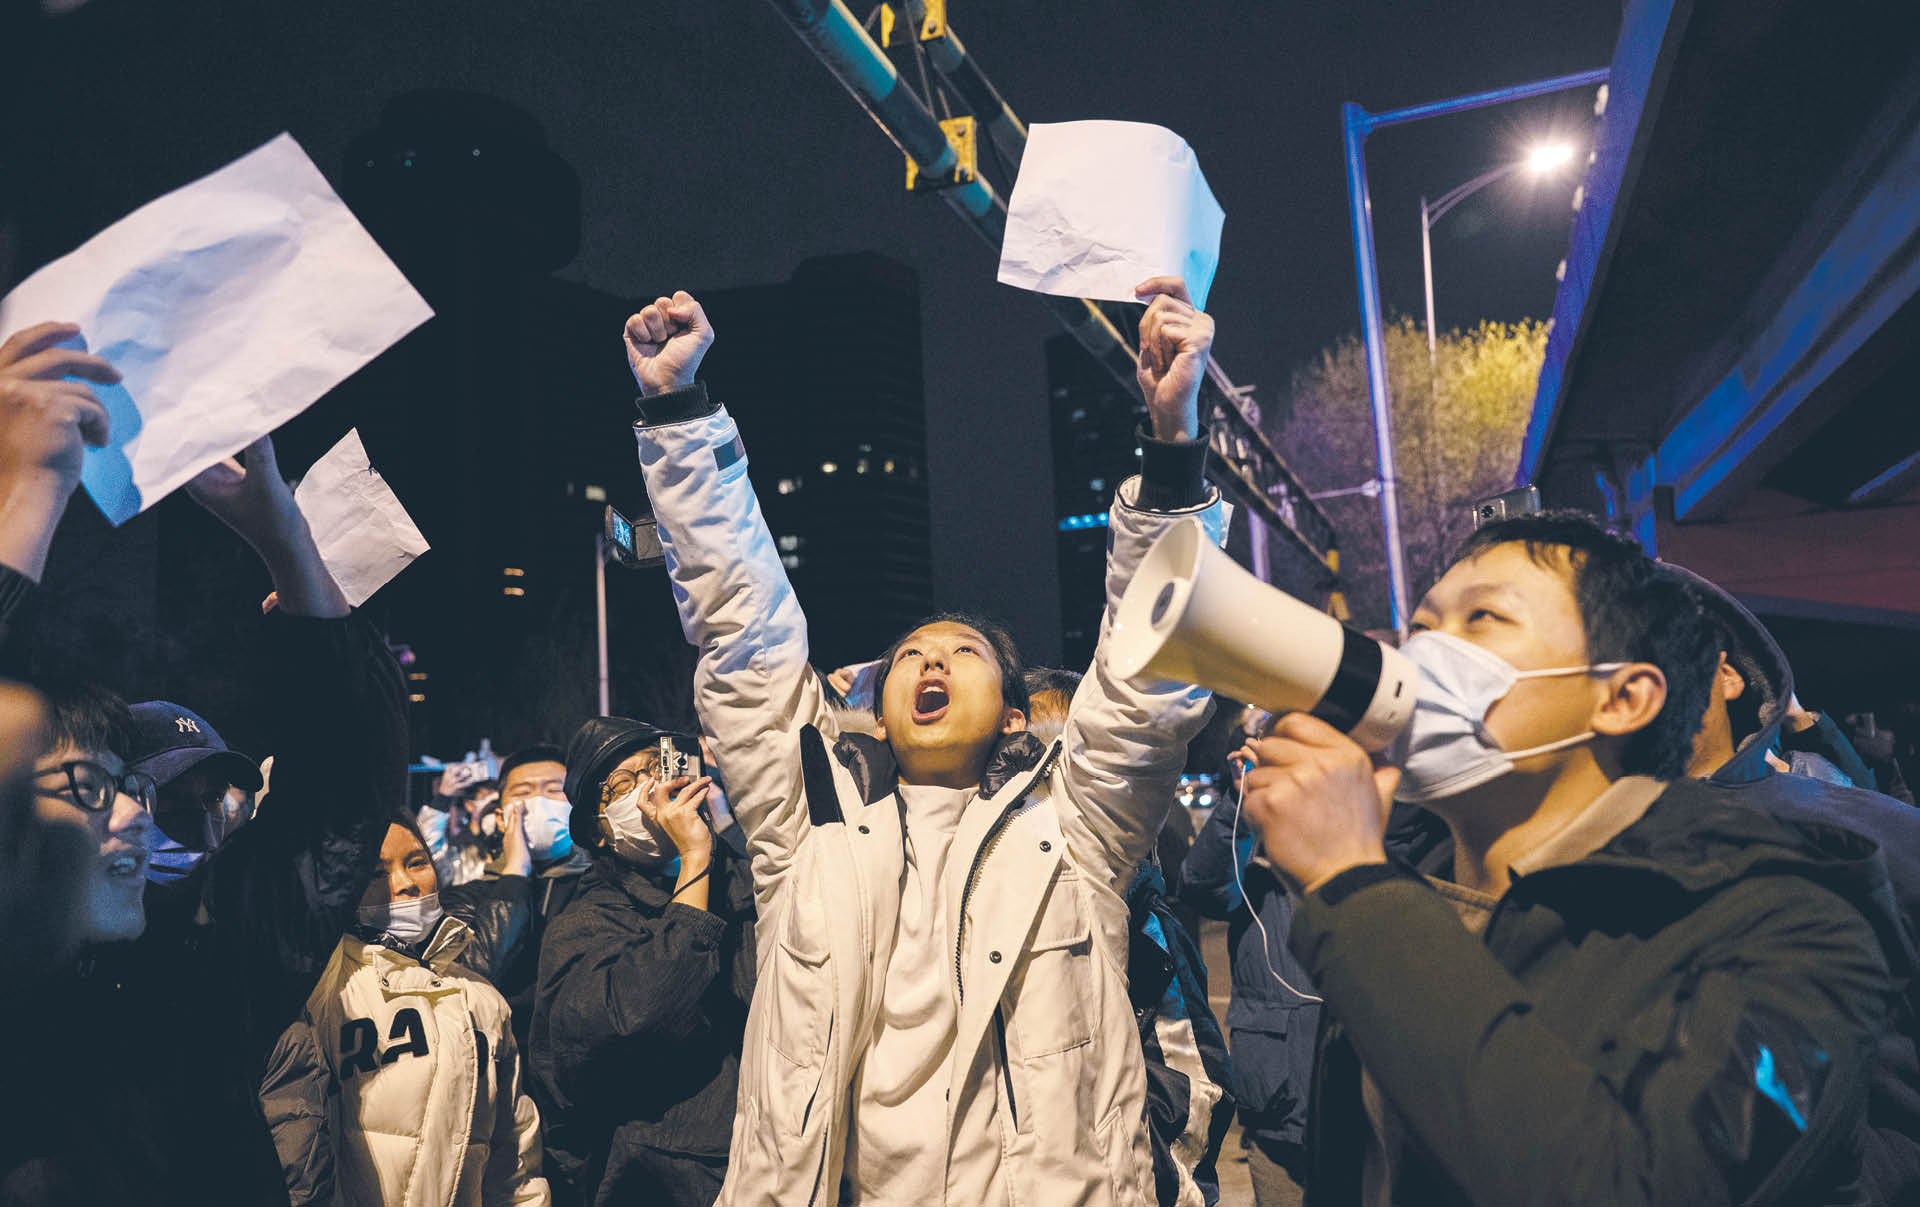 Niektórzy protestujący wznosili hasła wzywające do ustąpienia prezydenta Xi Jinpinga, ale większość domagała się zniesienia restrykcji covidowych